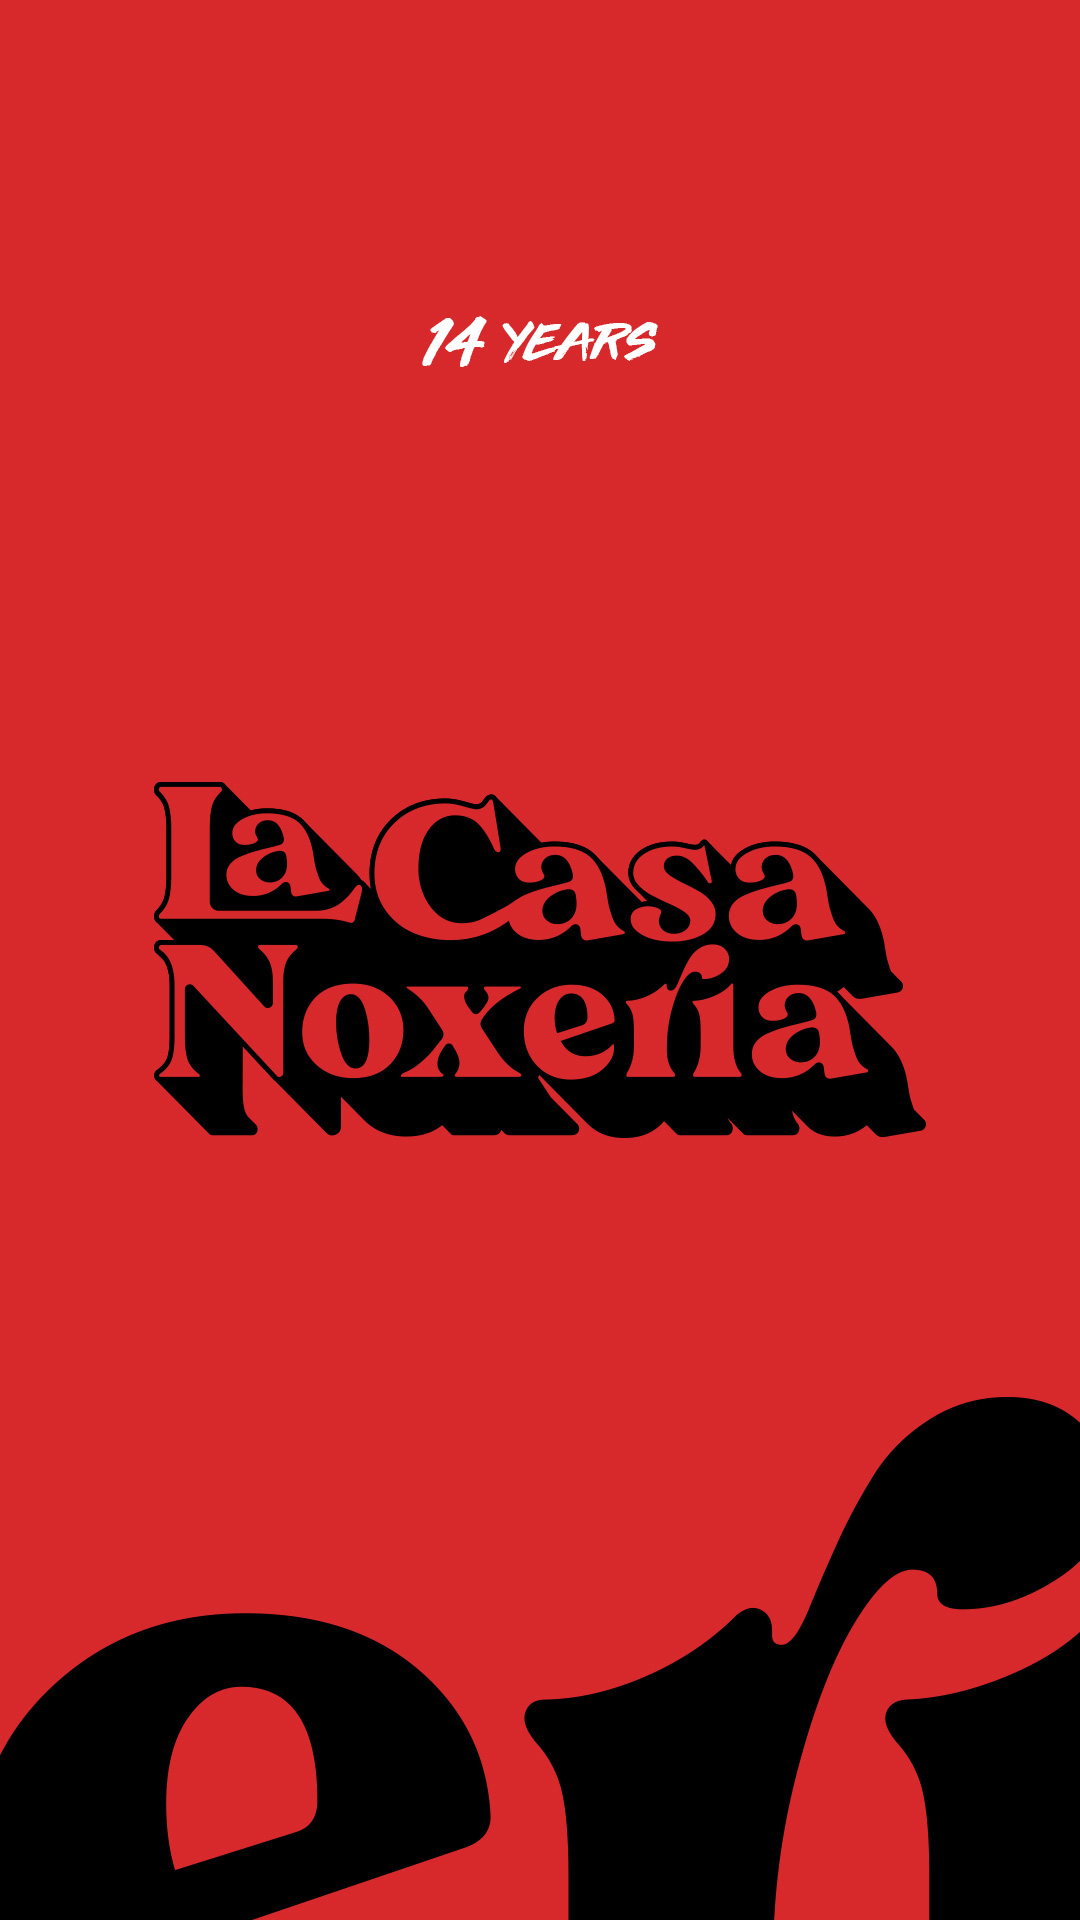 LaCasaNoxeria_14